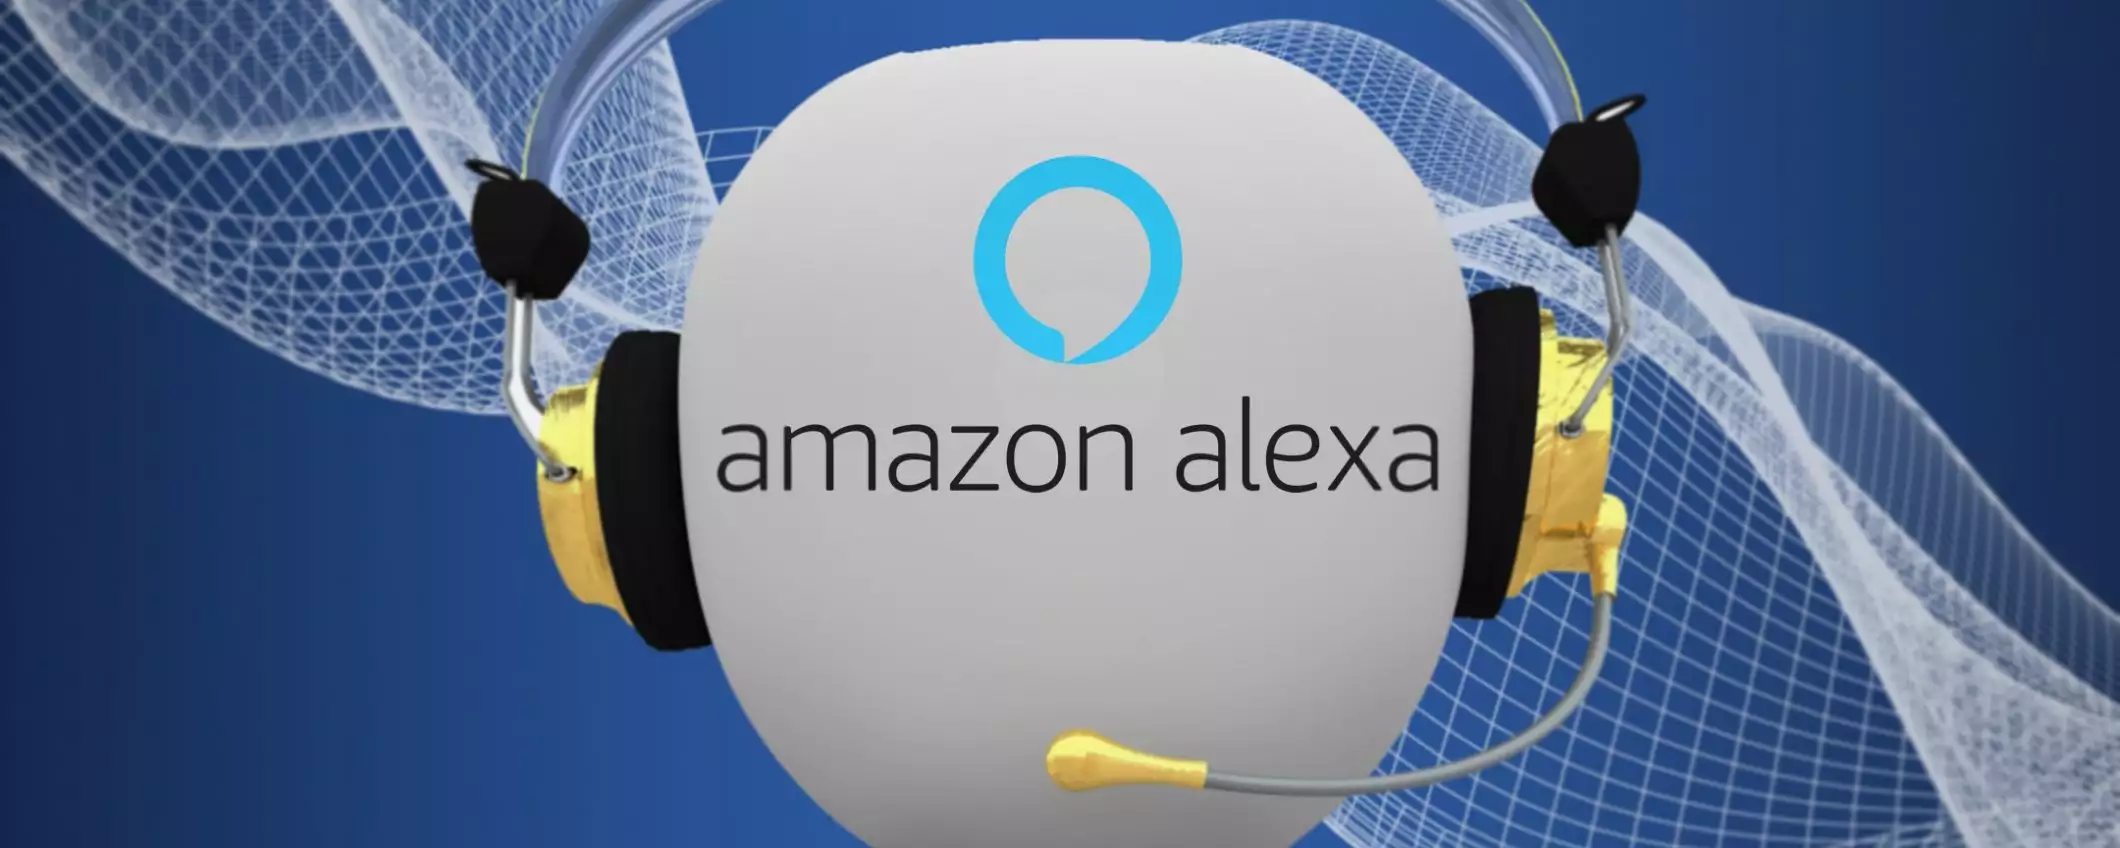 Videochiamate con Alexa: guida all'uso, come si fa